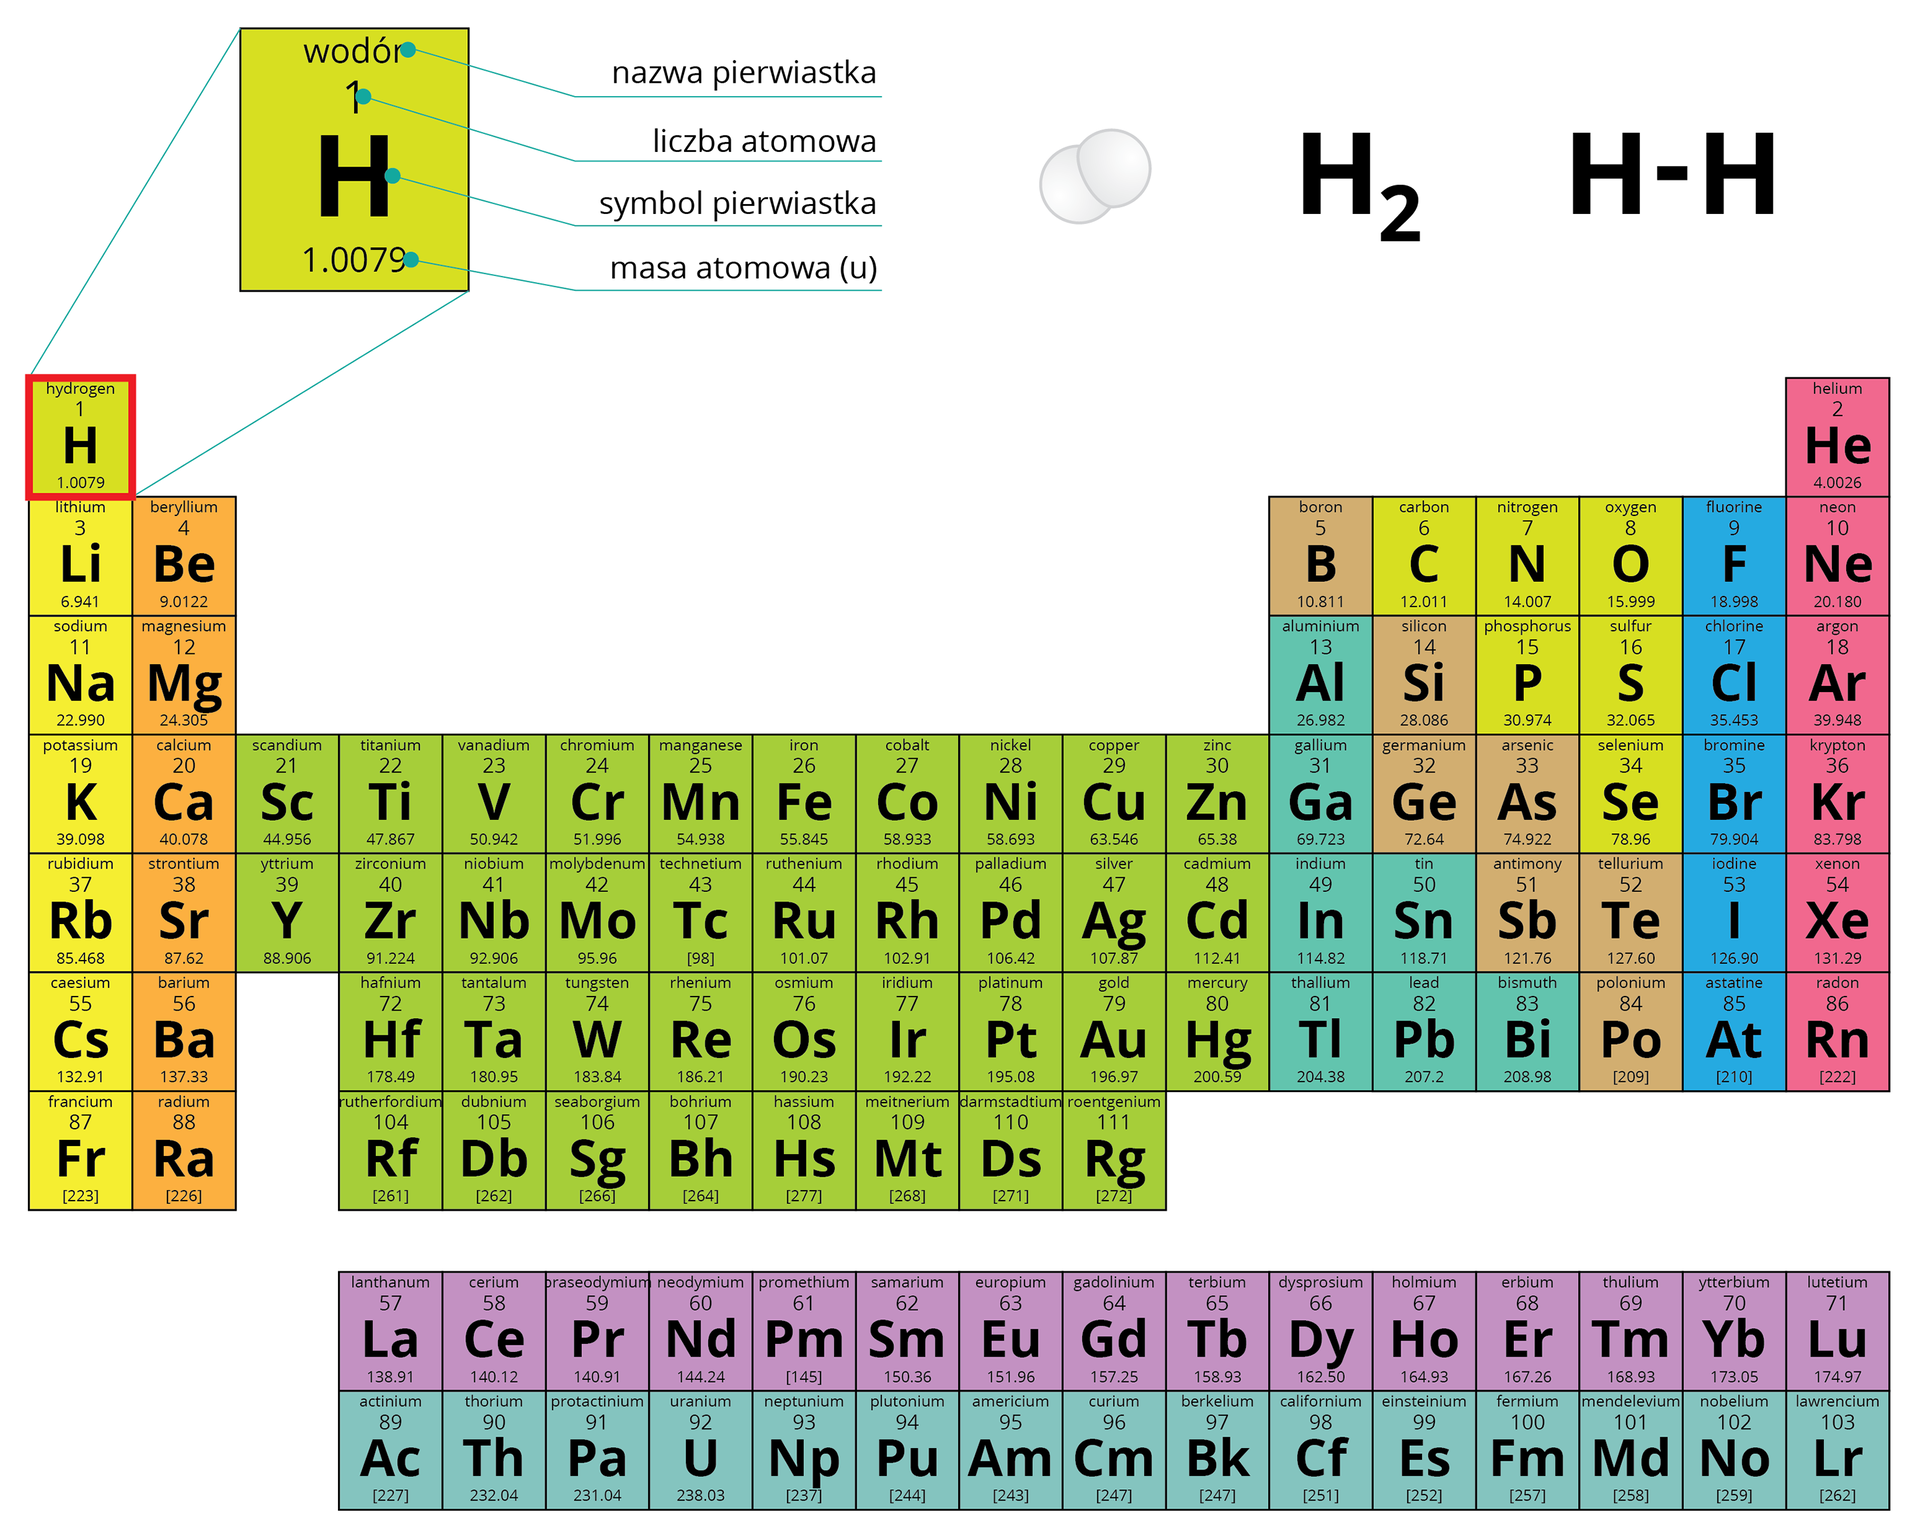 Ilustracja przedstawia wielobarwną wersję układu okresowego pierwiastków z wyróżnionym polem numer jeden, zarezerwowanym dla wodoru. Pole to w wersji powiększonej widnieje ponad tablicą i ma opisane wszystkie najważniejsze elementy: nazwę pierwiastka, jego liczbę atomową 1, symbol pierwiastka H oraz masę atomową 1,0079 unitów. Obok opisu po prawej stronie znajduje się opis cząsteczki wodoru w postaci schematycznego rysunku dwóch jasnych kulek połączonych ze sobą, wzoru sumarycznego H2 oraz wzoru strukturalnego, gdzie dwa atomy H połączone są wiązaniem pojedynczym.